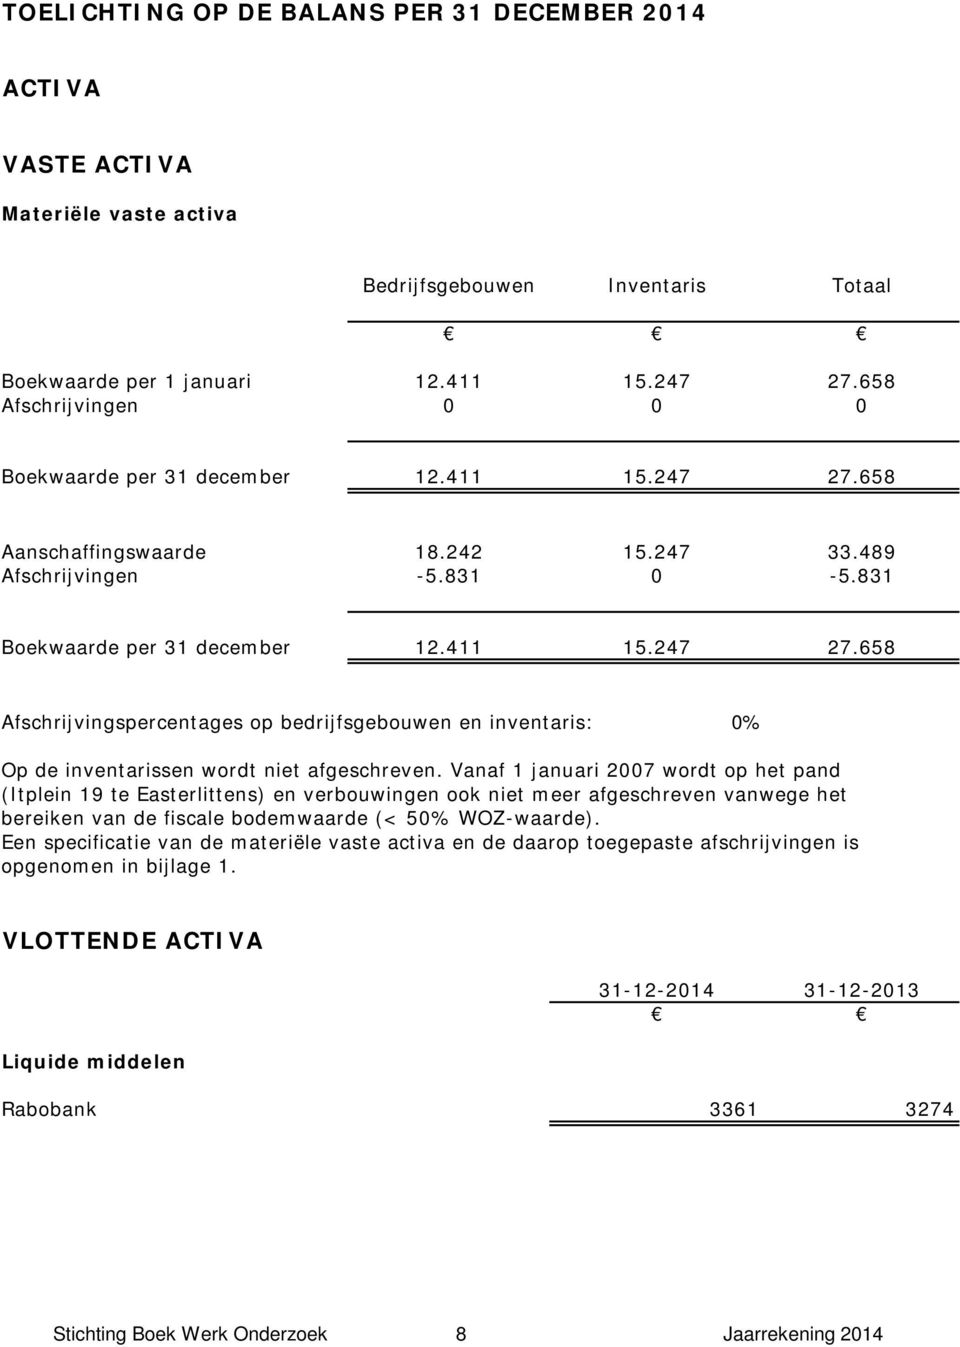 Vanaf 1 januari 2007 wordt op het pand (Itplein 19 te Easterlittens) en verbouwingen ook niet meer afgeschreven vanwege het bereiken van de fiscale bodemwaarde (< 50% WOZ-waarde).